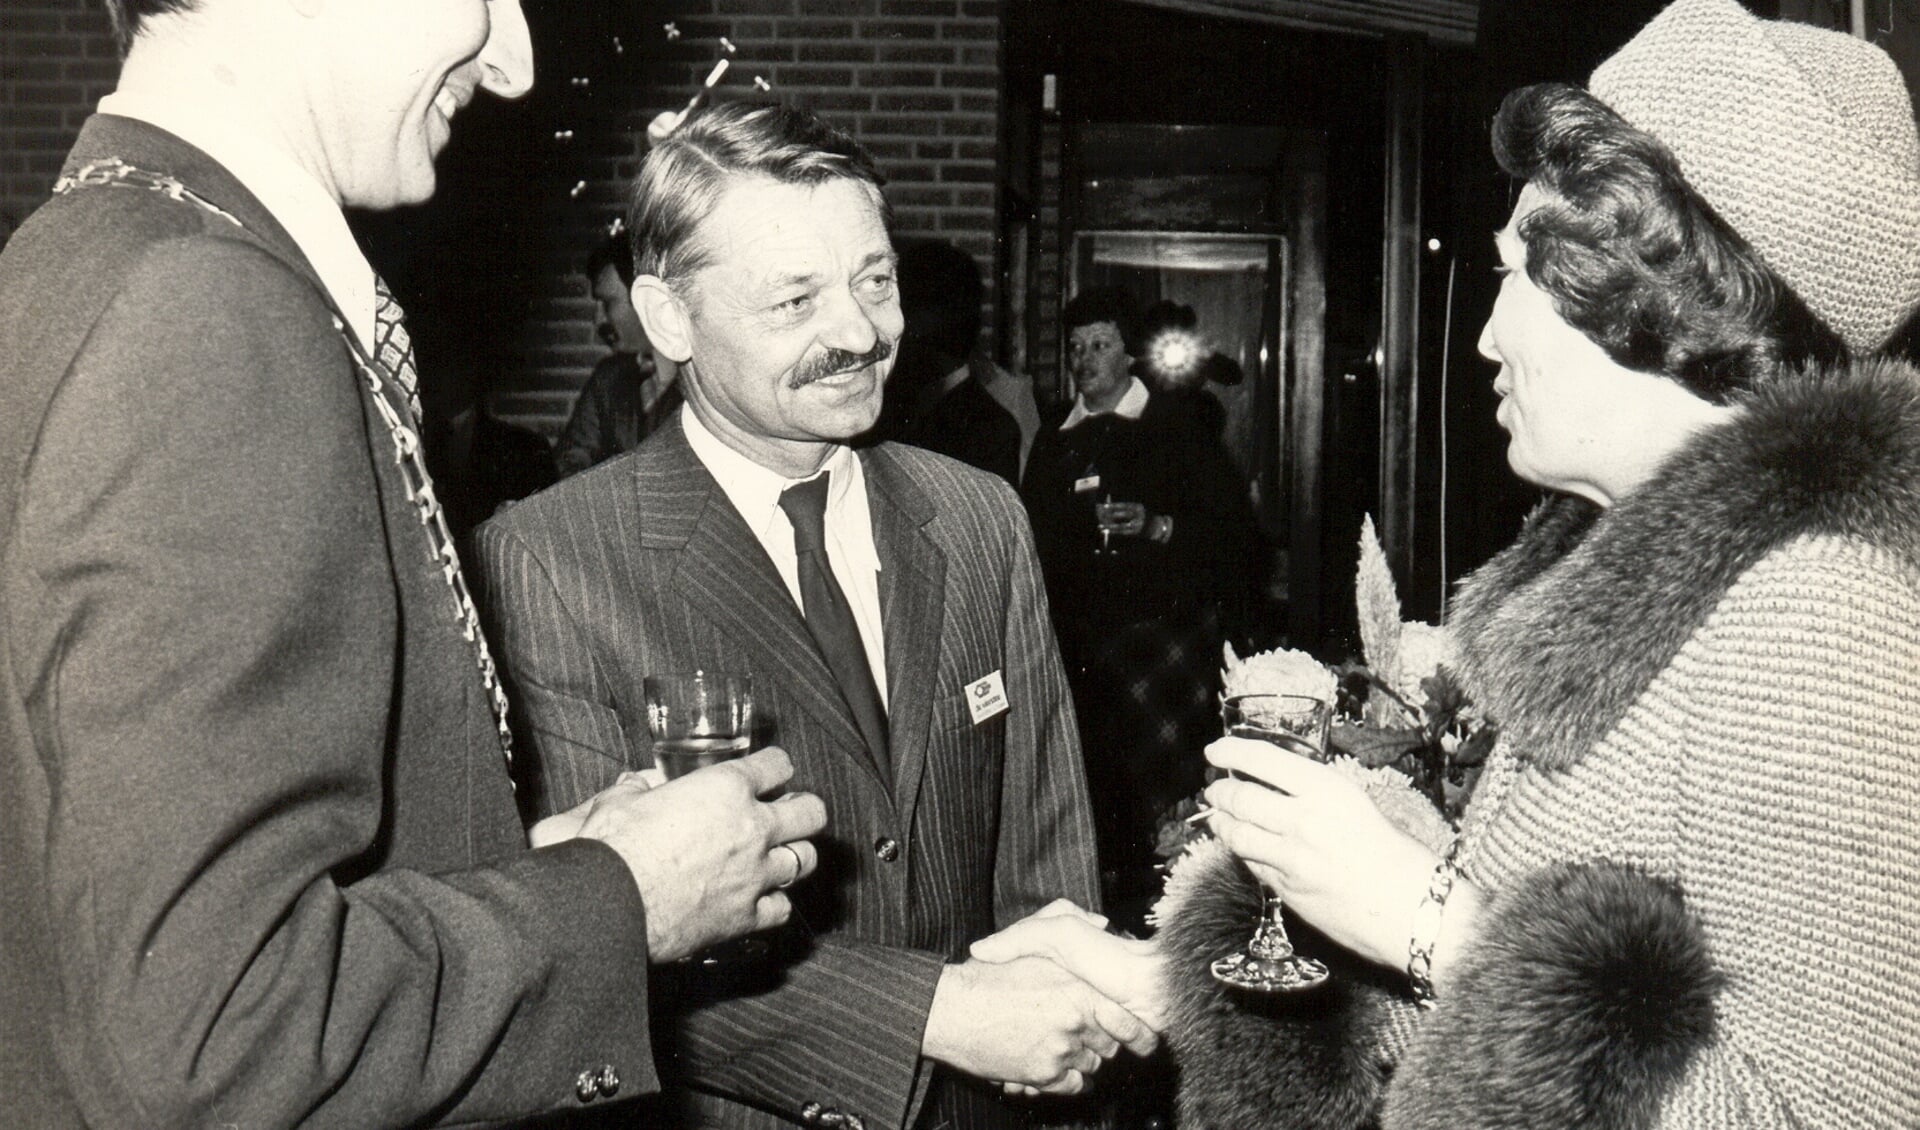 De voice -over in de film is verzorgd door Kees Pijpers, hier in gesprek met Koningin Beatrix tijdens de opening van De Vierstee.